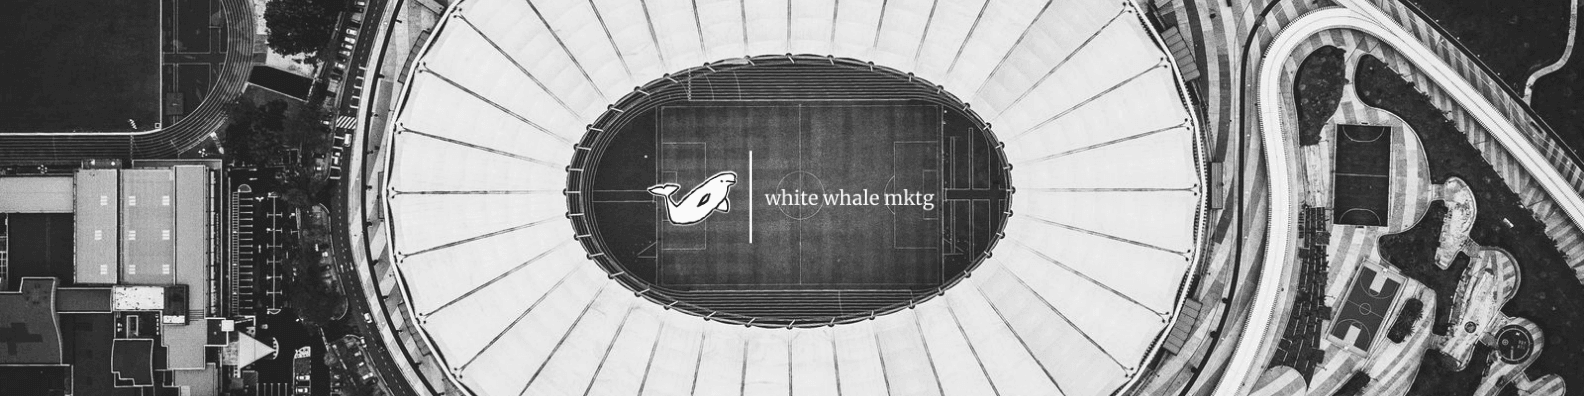 whitewhalemktg banner